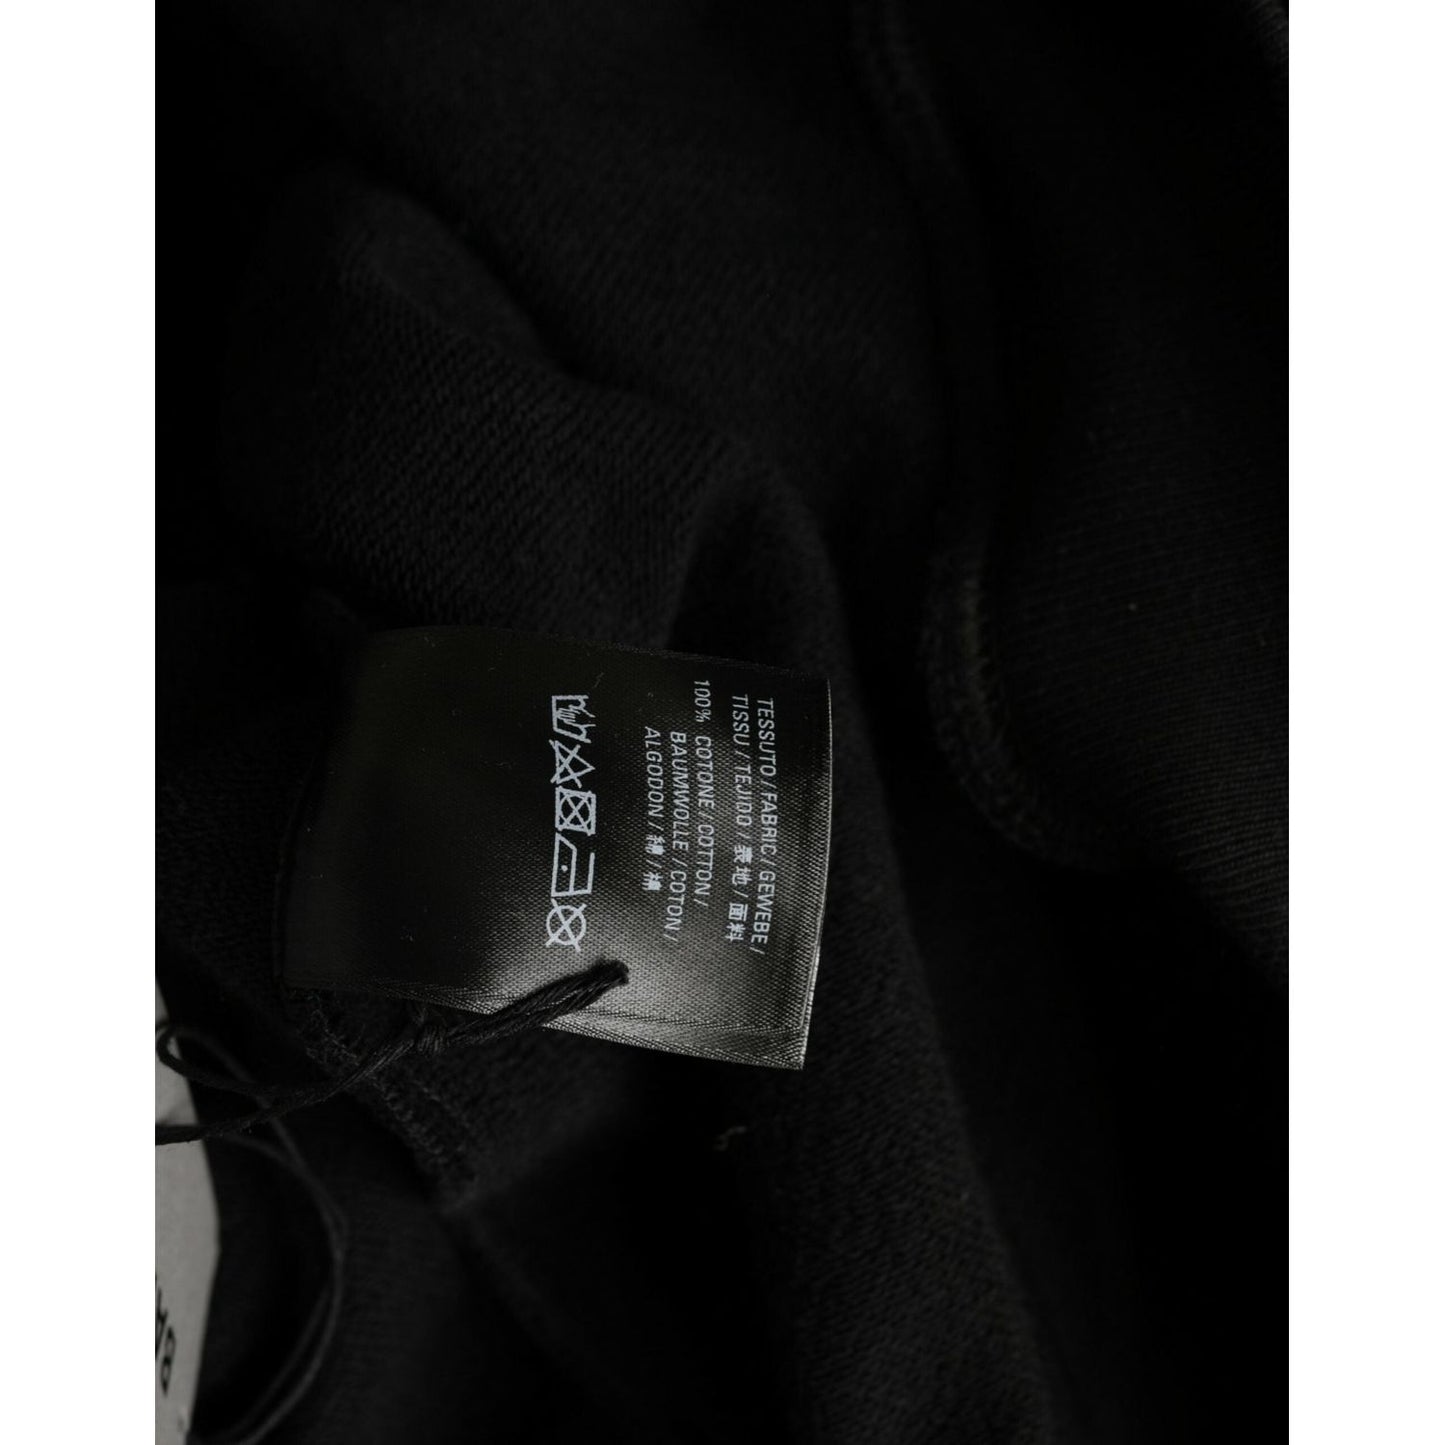 Balenciaga Black Cotton CREW Hooded Pullover Sweatshirt Sweater black-cotton-crew-hooded-pullover-sweatshirt-sweater